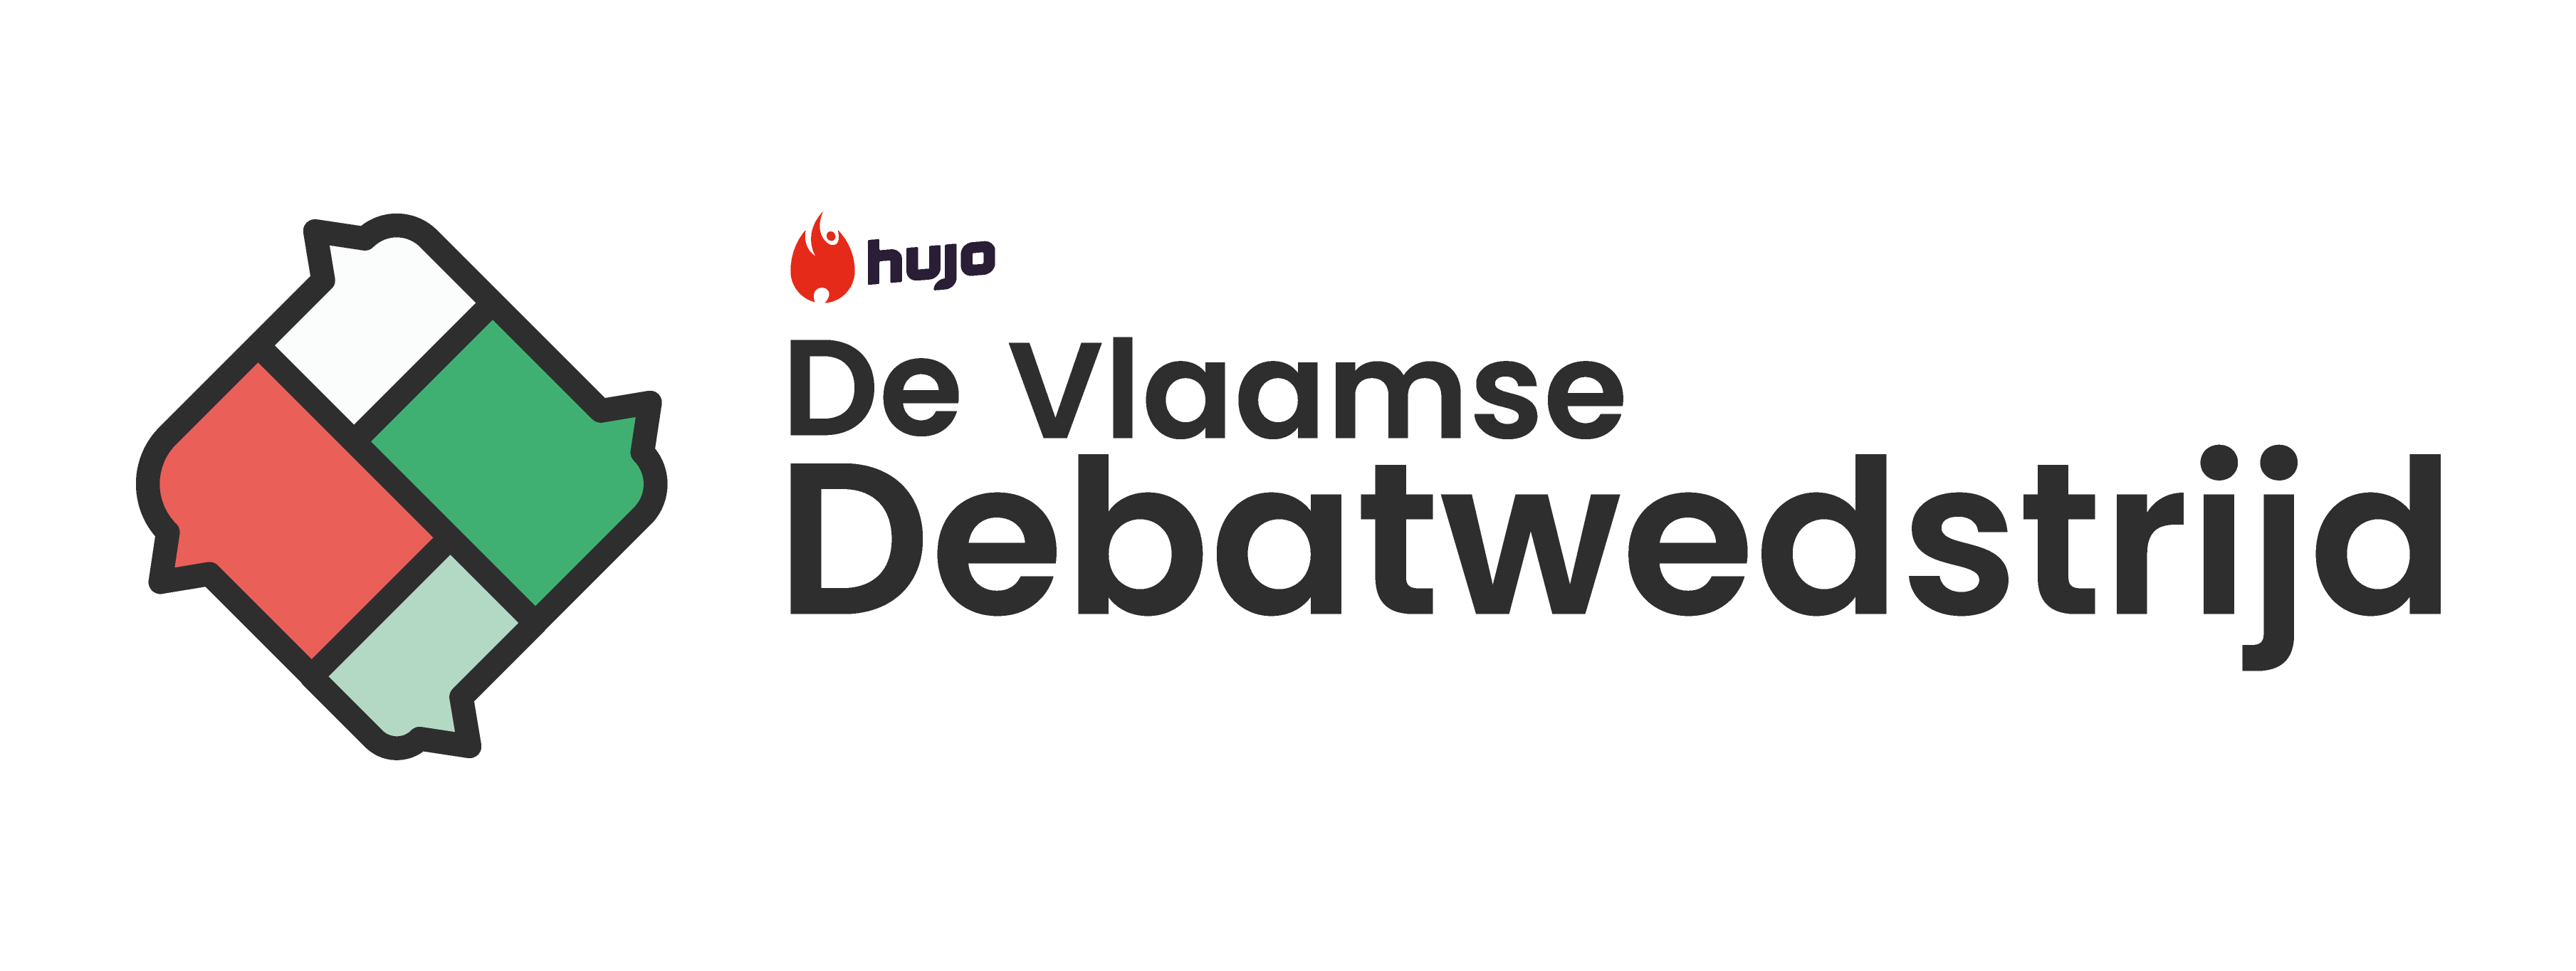 De Vlaamse Debatwedstrijd